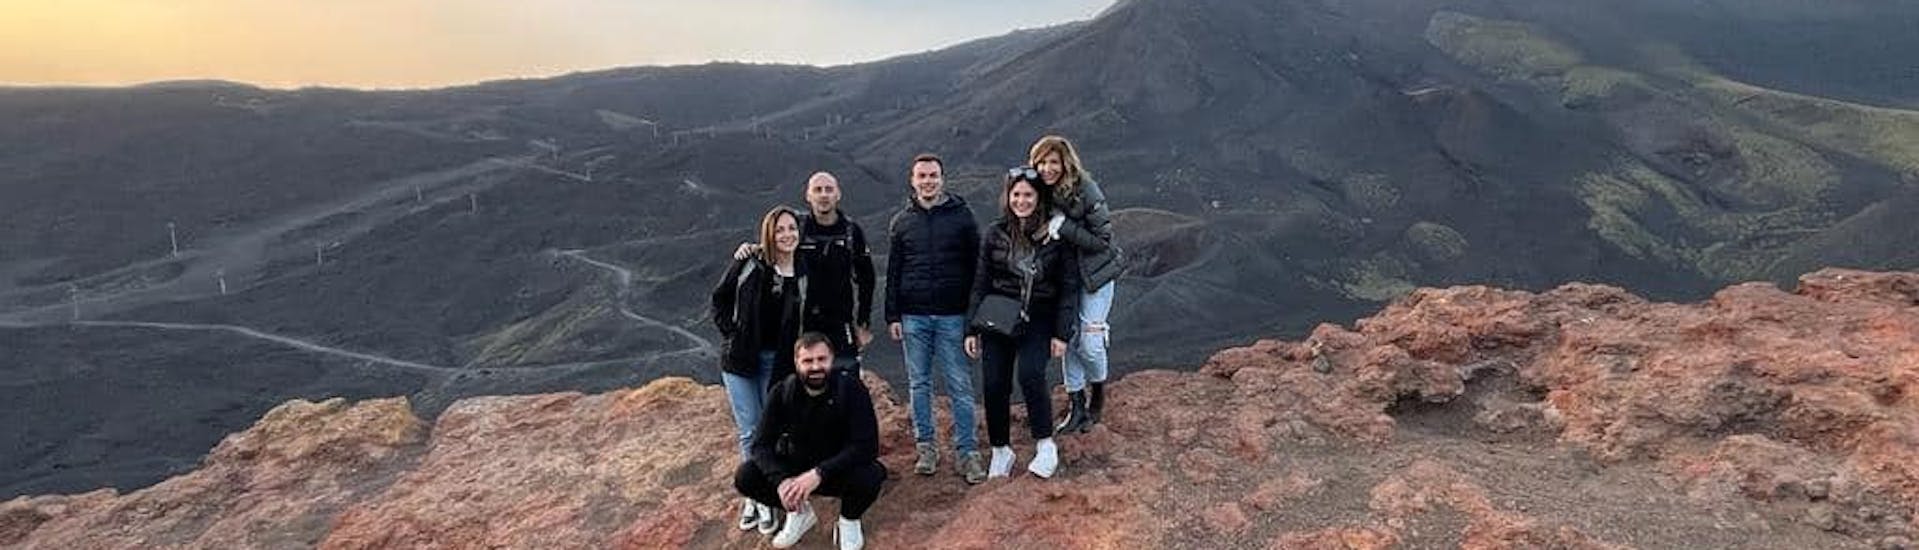 Un gruppo di amici sull'Etna durante il Tour in Jeep sull'Etna al tramonto con degustazione di prodotti locali con Etna & Sea Excursions Catania.